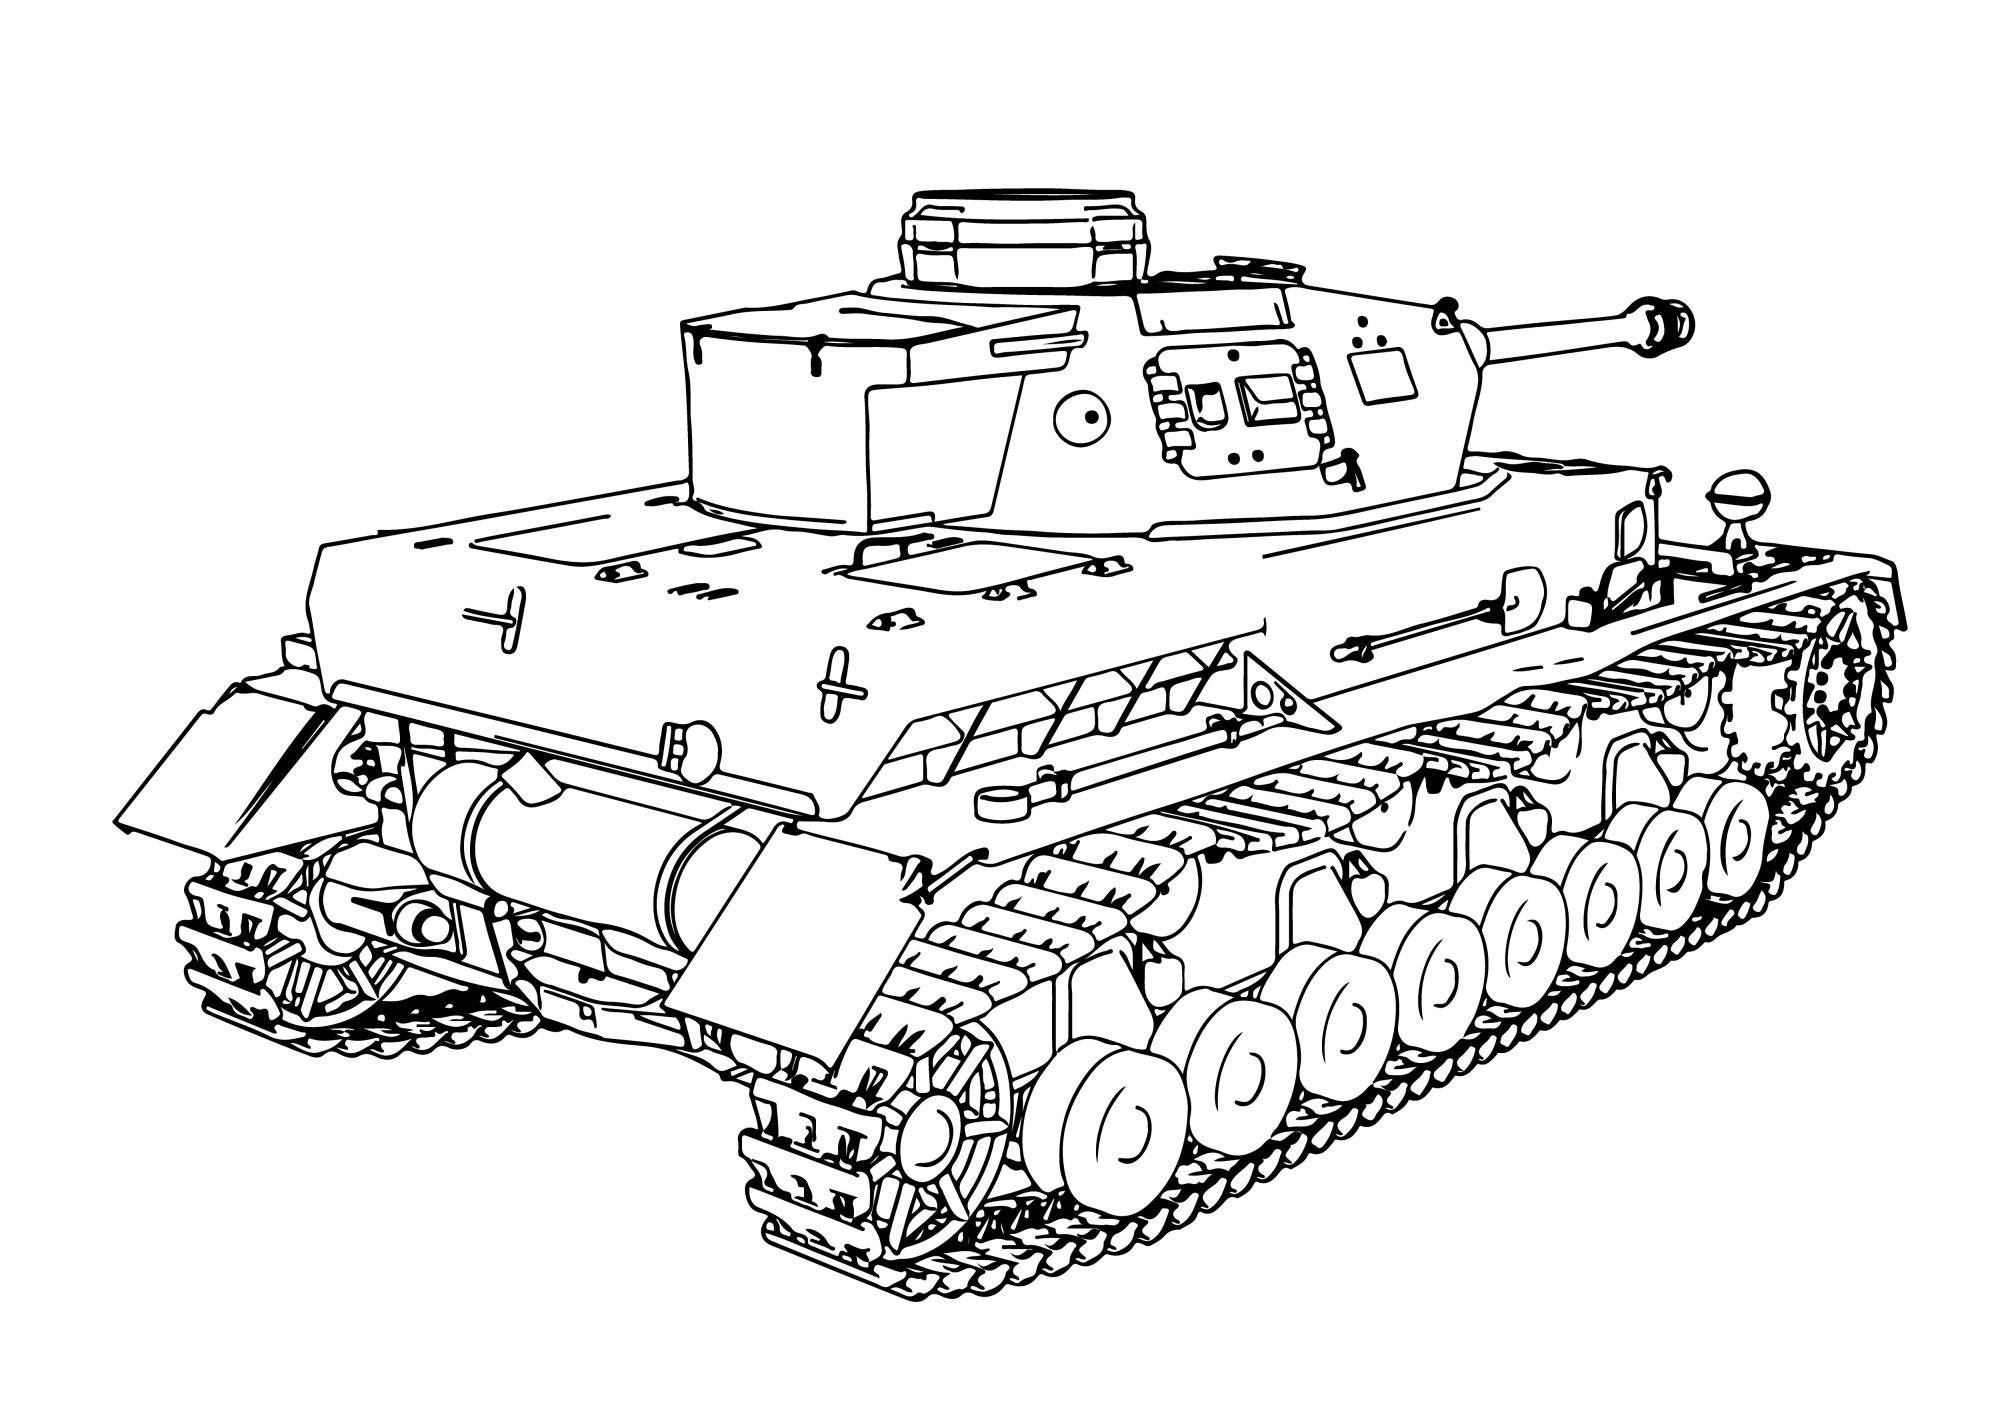 Раскраска для детей: крутой танк на гусеницах